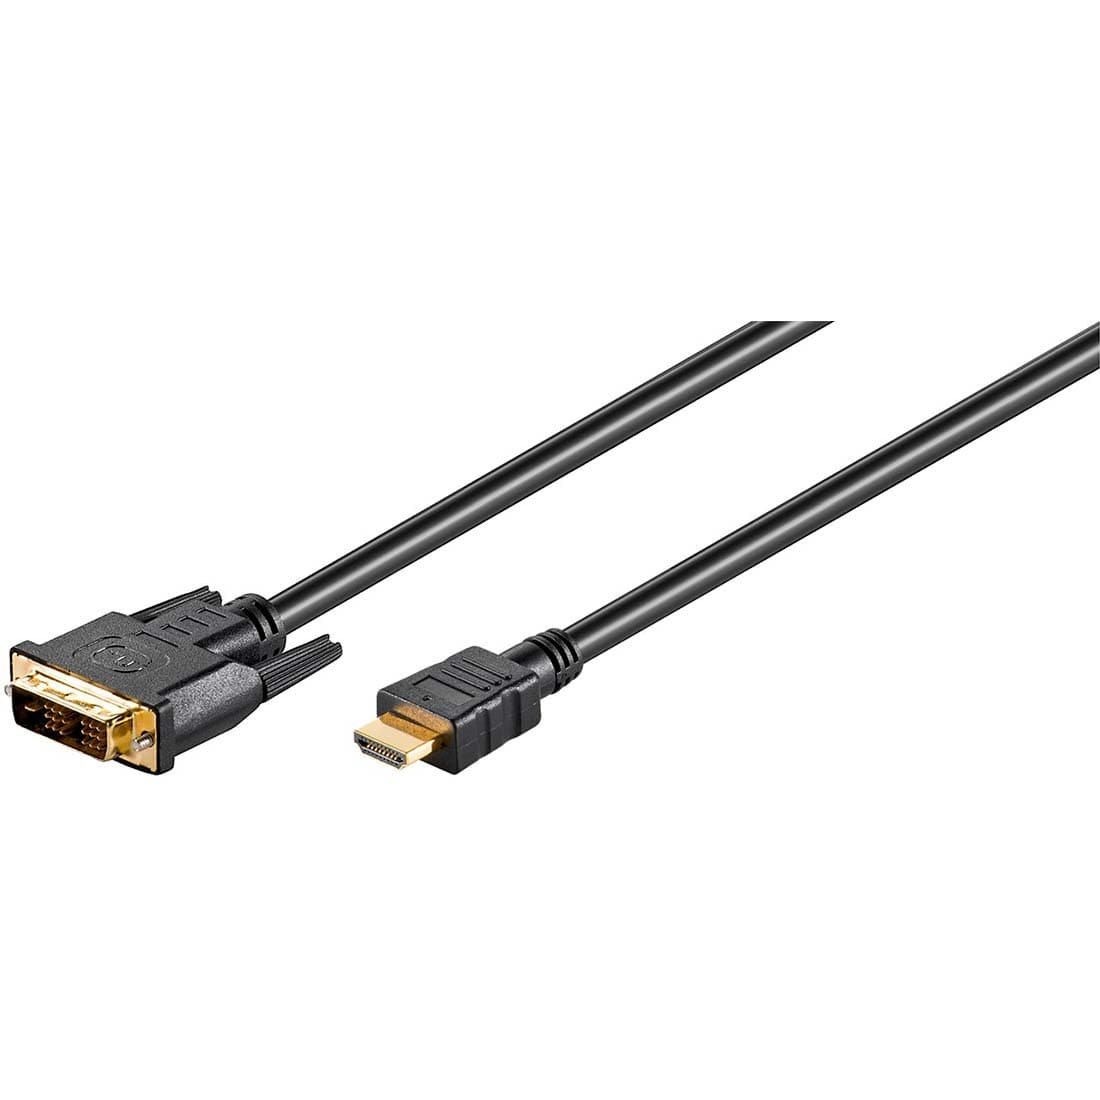 Billede af DVI-D til HDMI Kabel - 1 meter - 1080p (51579)